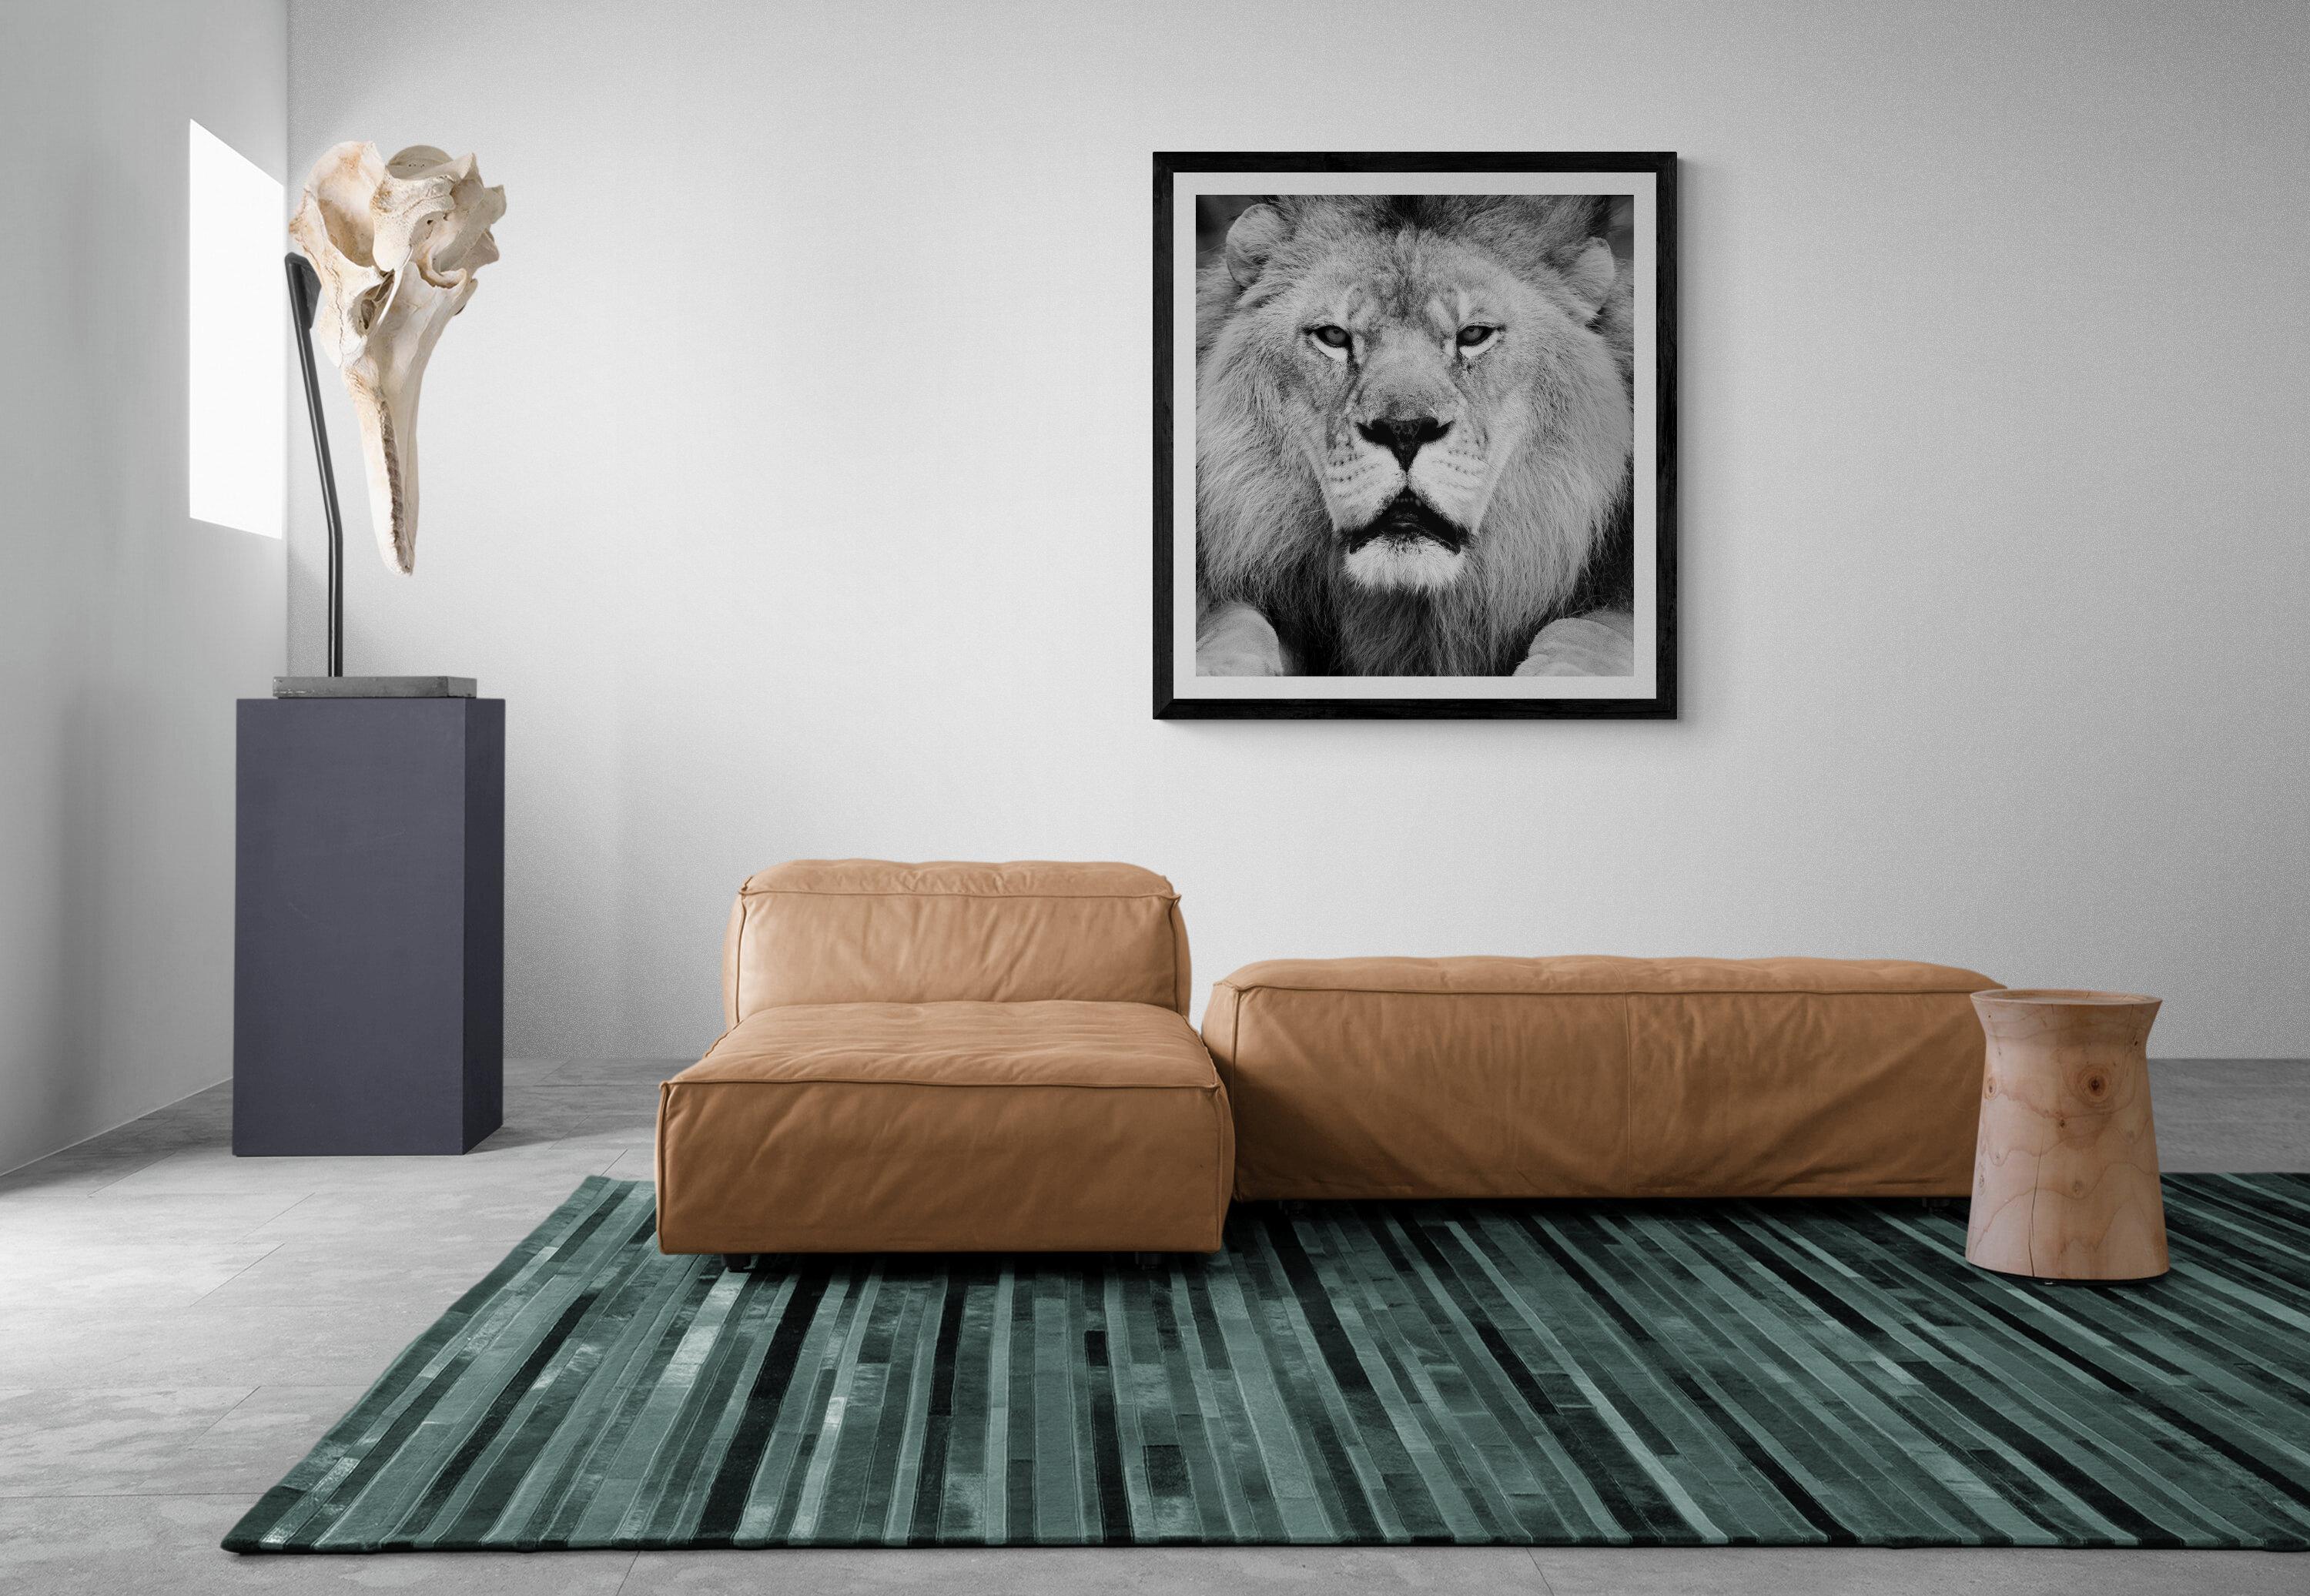 Il s'agit d'une photographie contemporaine en noir et blanc d'un lion d'Afrique, réalisée par Shane Russeck. 
36x48 édition de 12
Signé et numéroté 
Imprimé sur du papier d'archives et avec des encres d'archives.
Encadrement disponible.